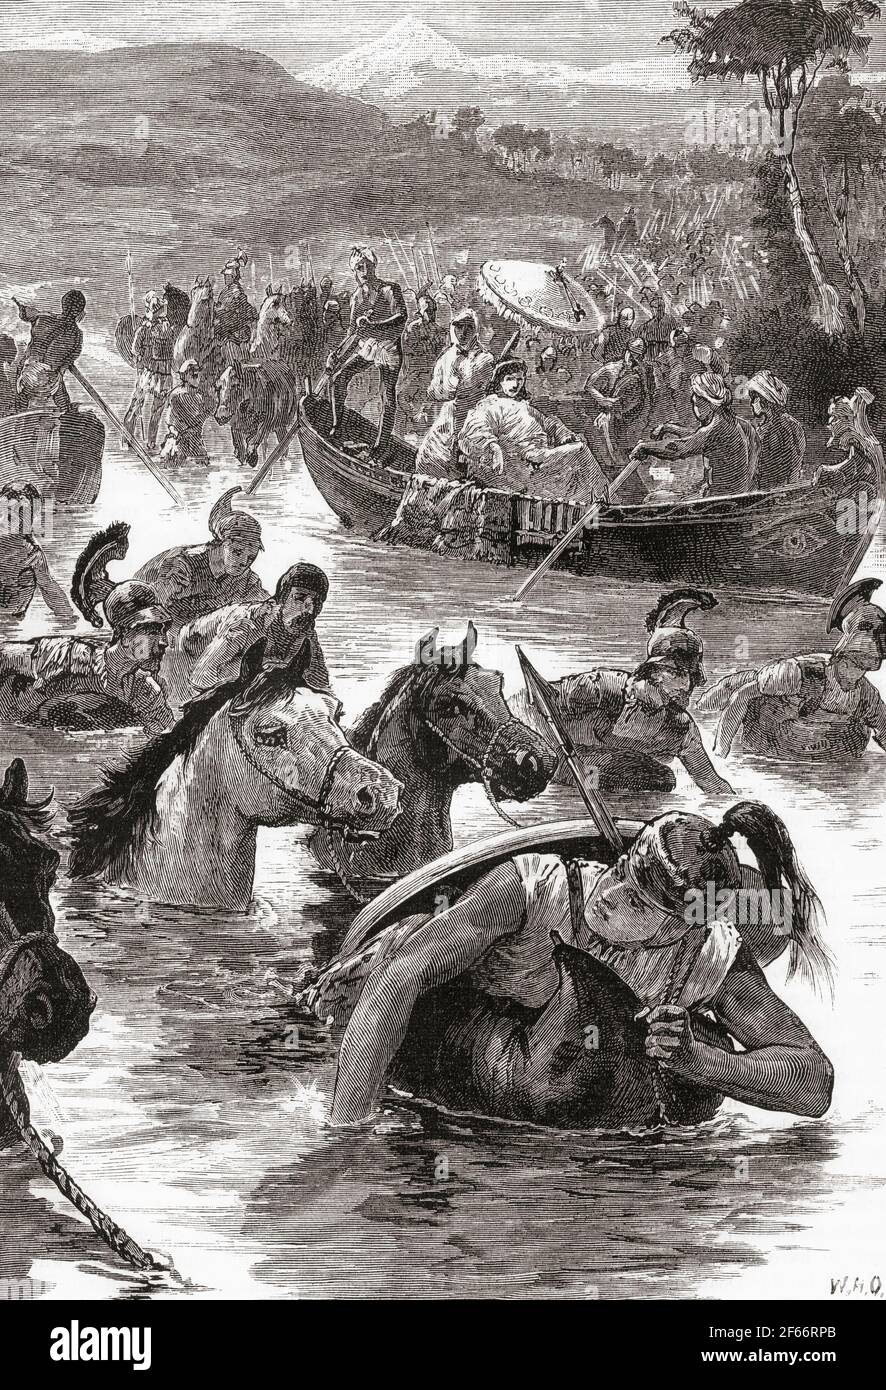 Die Mazedonier von Alexander dem Großen, der den Jaxartes oder Syr Darya Fluss überquert, in der Schlacht von Jaxartes, 329 v. Chr. Aus Cassells Universal History, veröffentlicht 1888. Stockfoto